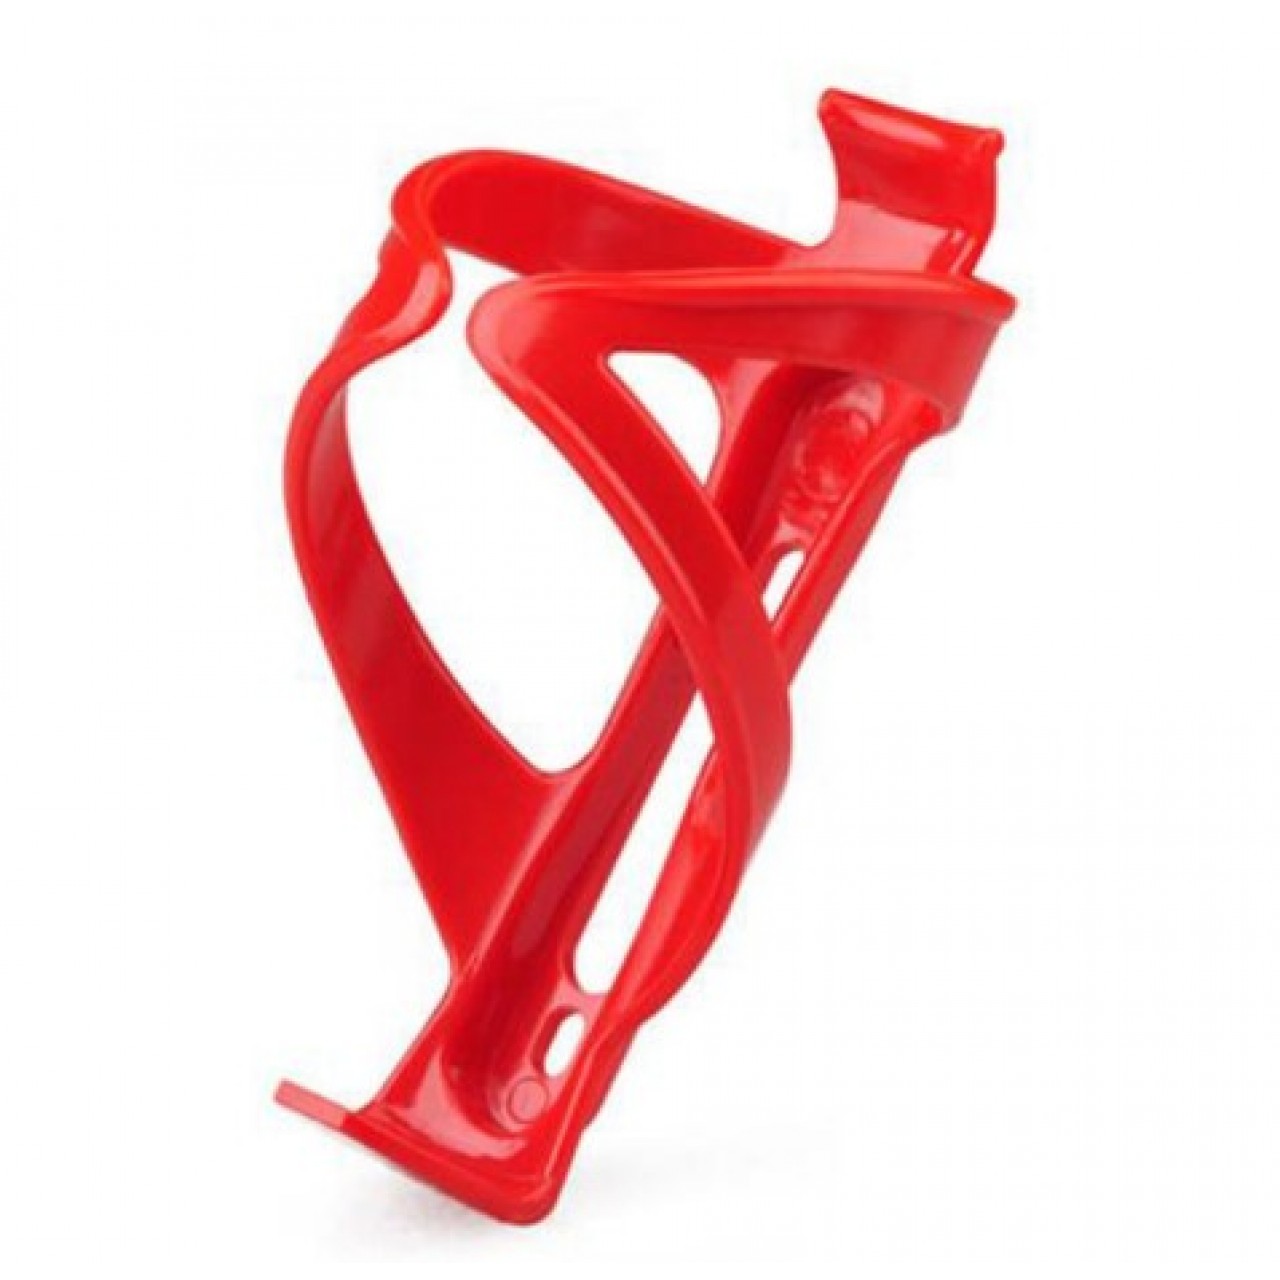 Βάση παγουριού ποδηλάτου πλαστικό - 2740 - Κόκκινο - OEM